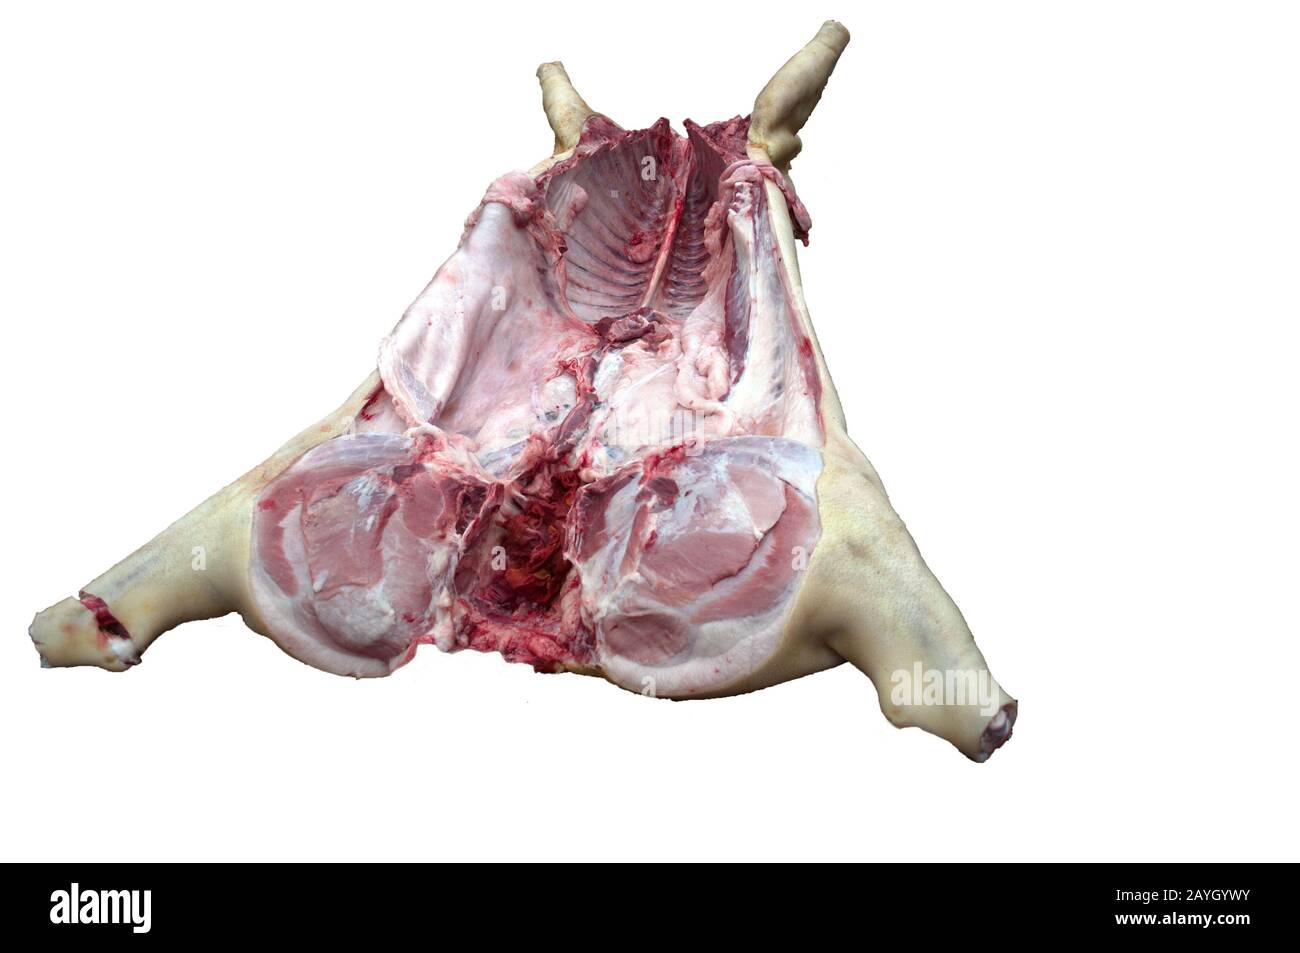 La carcassa di maiale senza testa è pronta per essere smontata dal macellaio. Fotografato dalla coda. Isolare su uno sfondo bianco. Foto Stock